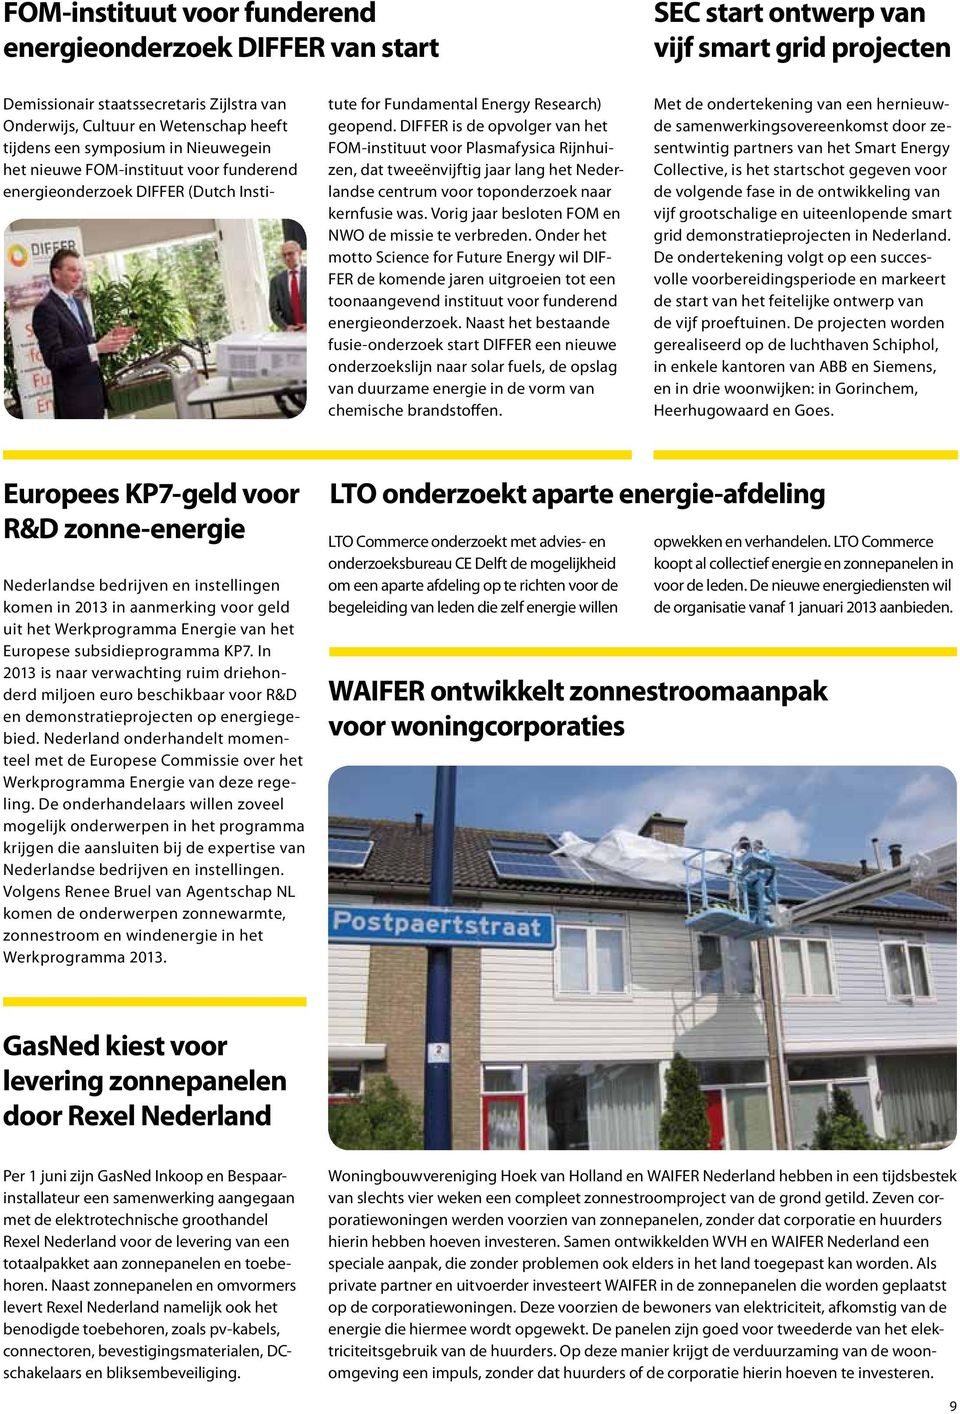 DIFFER is de opvolger van het FOM-instituut voor Plasmafysica Rijnhuizen, dat tweeënvijftig jaar lang het Nederlandse centrum voor toponderzoek naar kernfusie was.